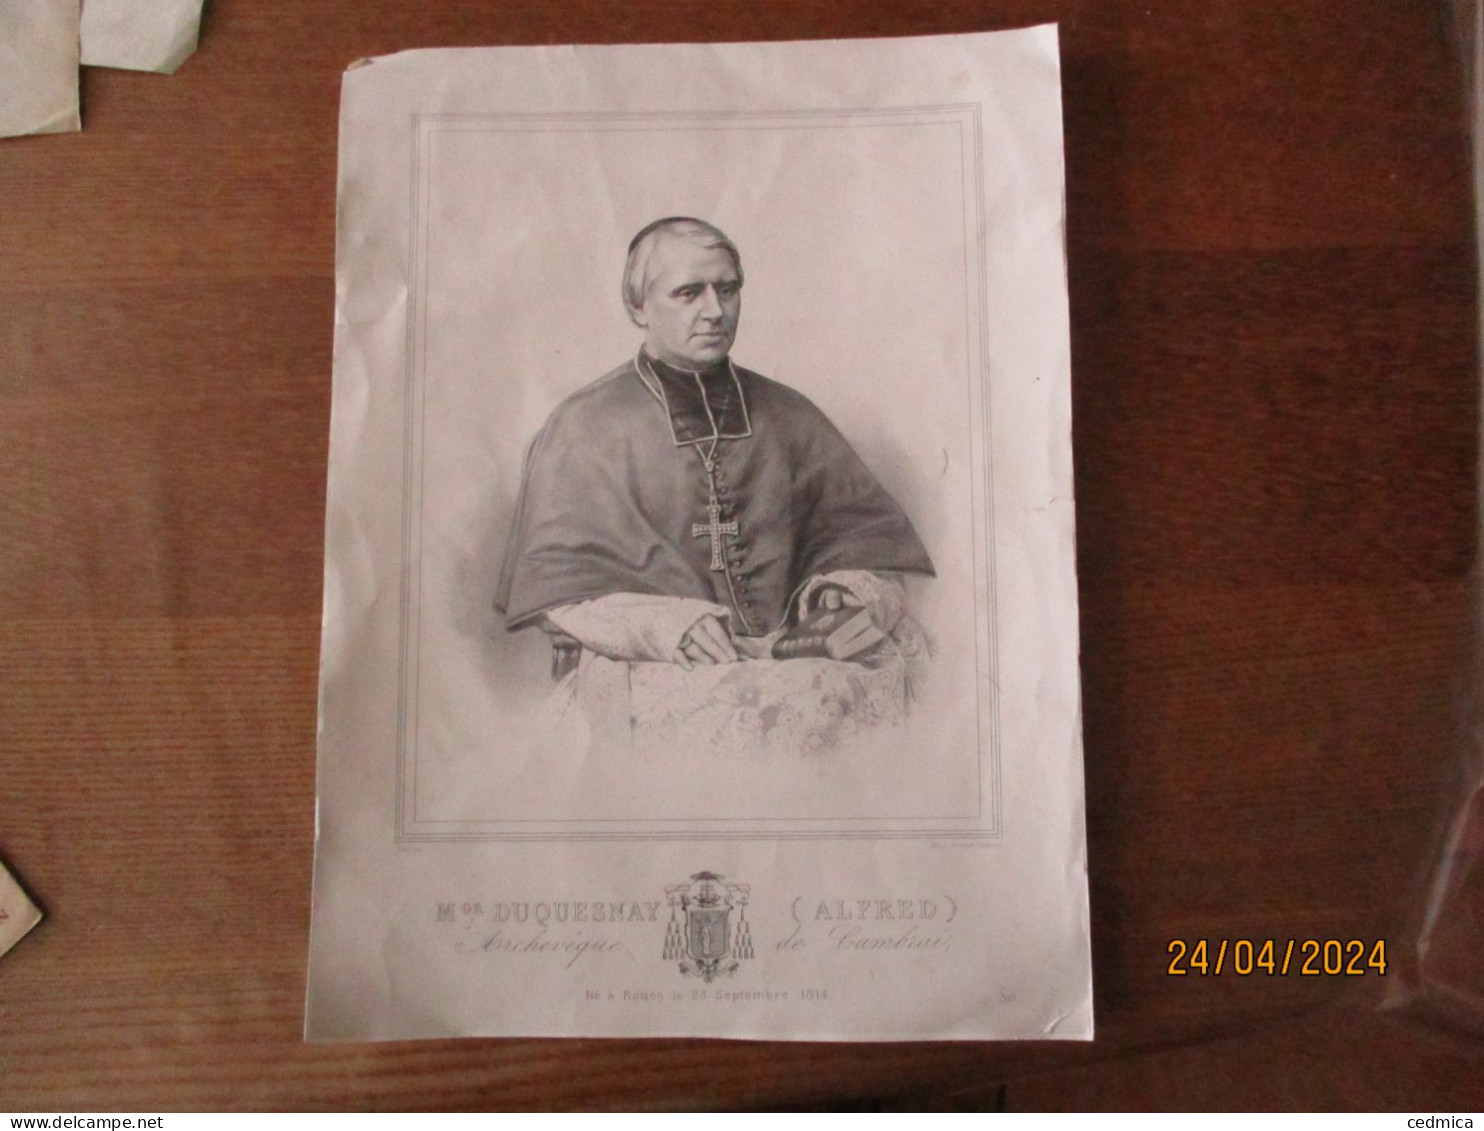 Mgr DUQUESNAY (ALFRED) ARCHEVÊQUE DE CAMBRAI NE A ROUEN LE 23 SEPTEMBRE 1814 LITH.J.RENANT CAMBRAI 36cm/26cm - Religion & Esotérisme